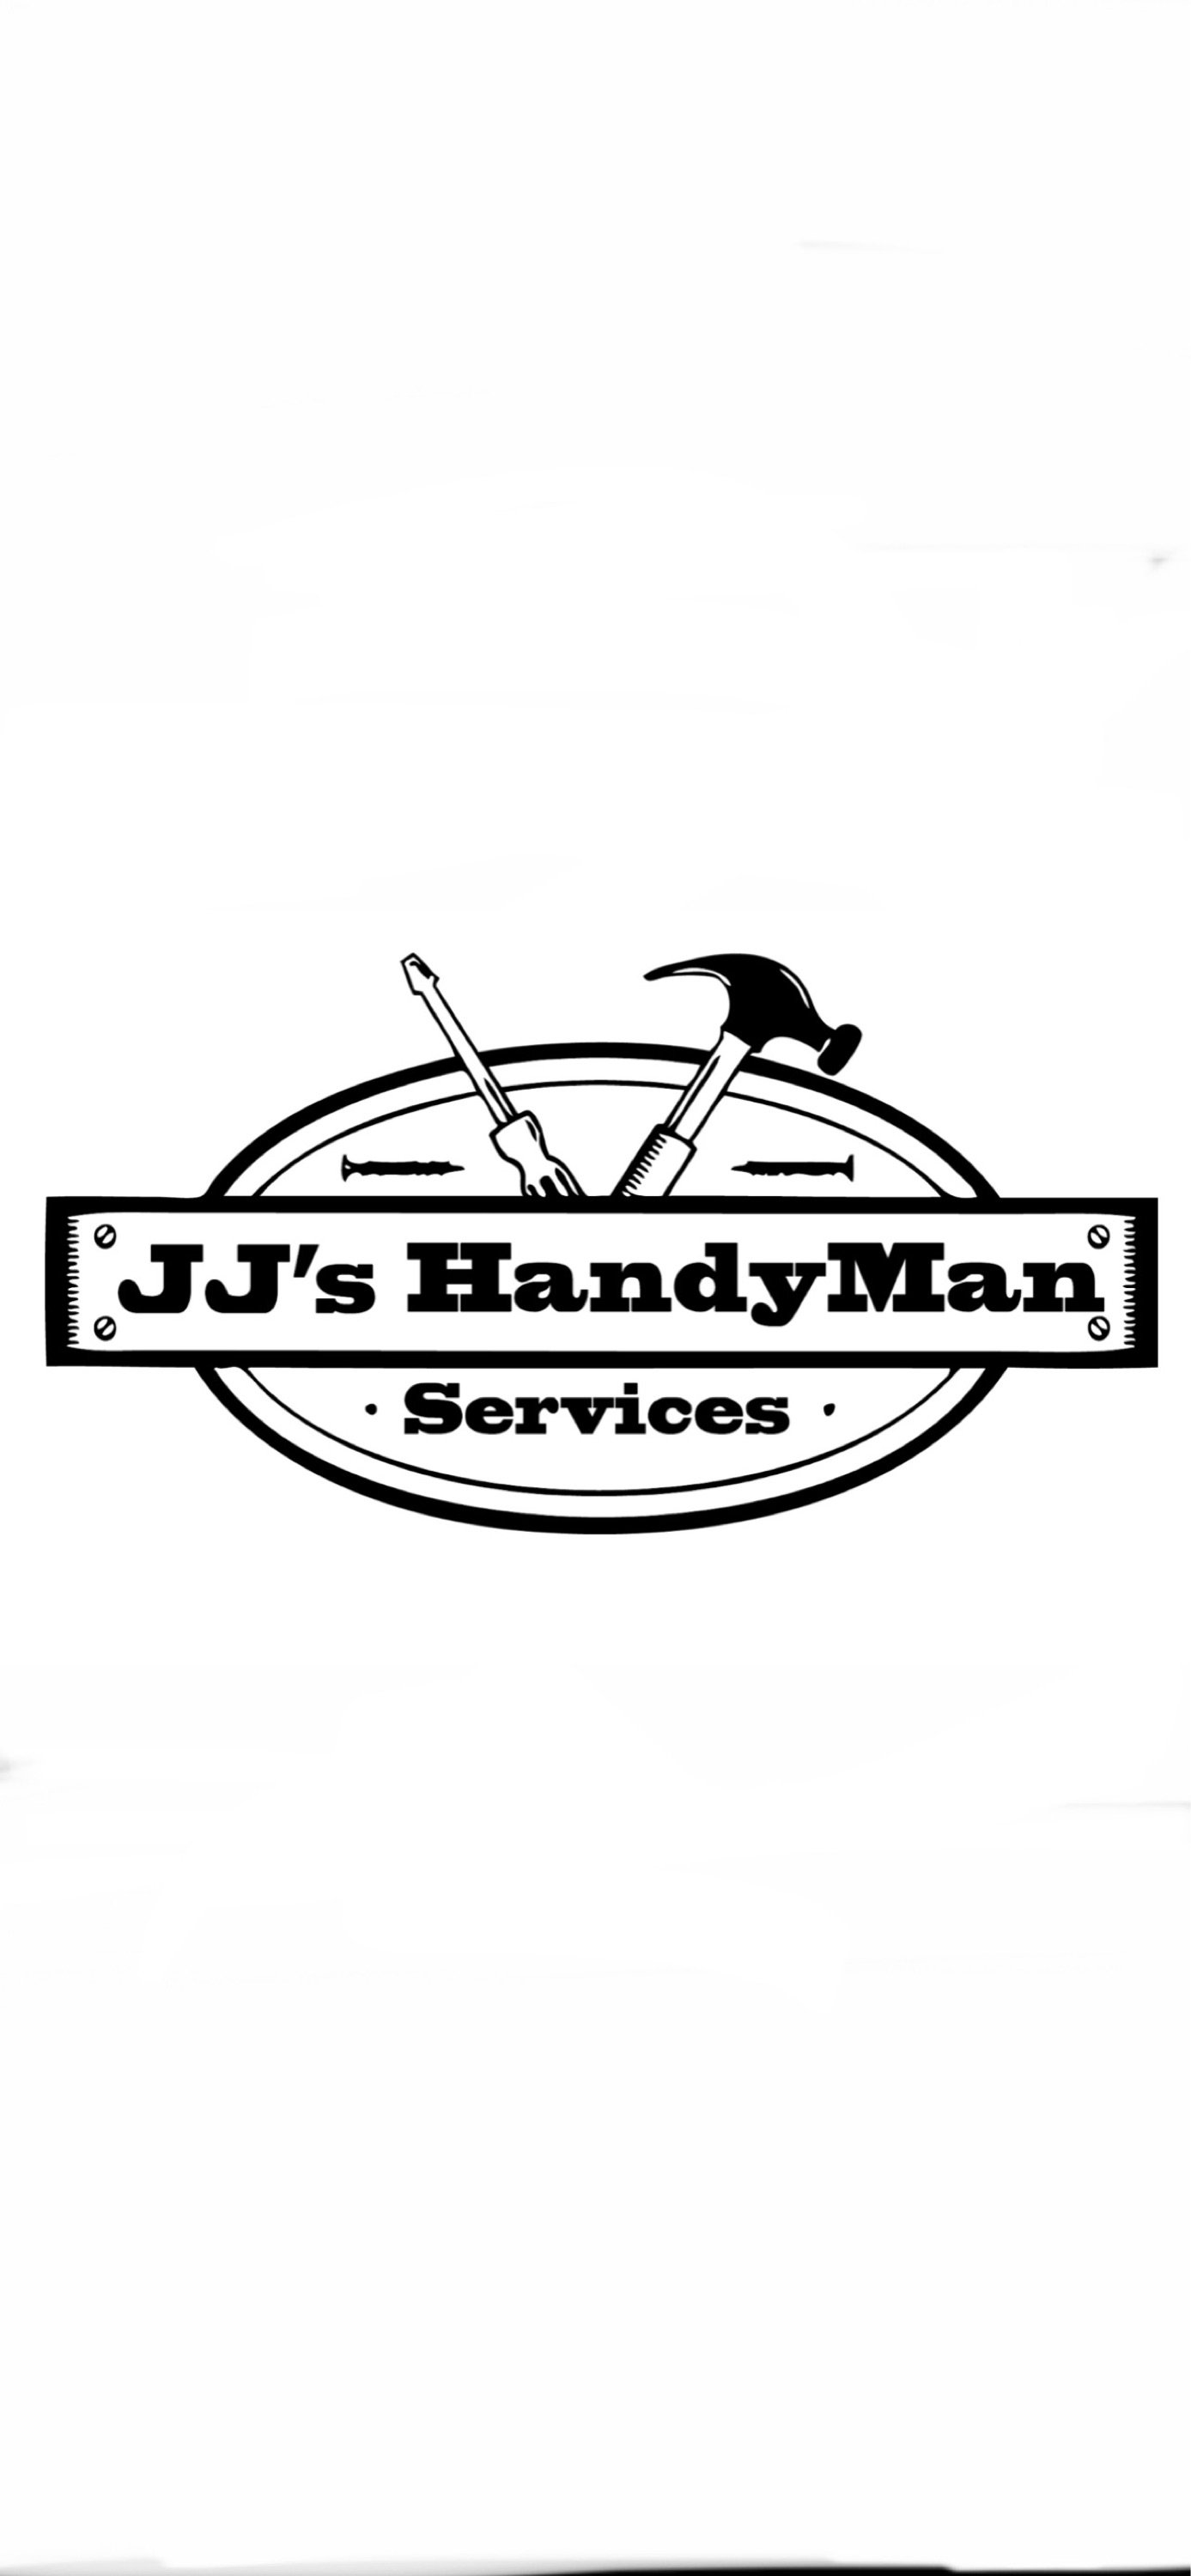 JJ Handyman Logo